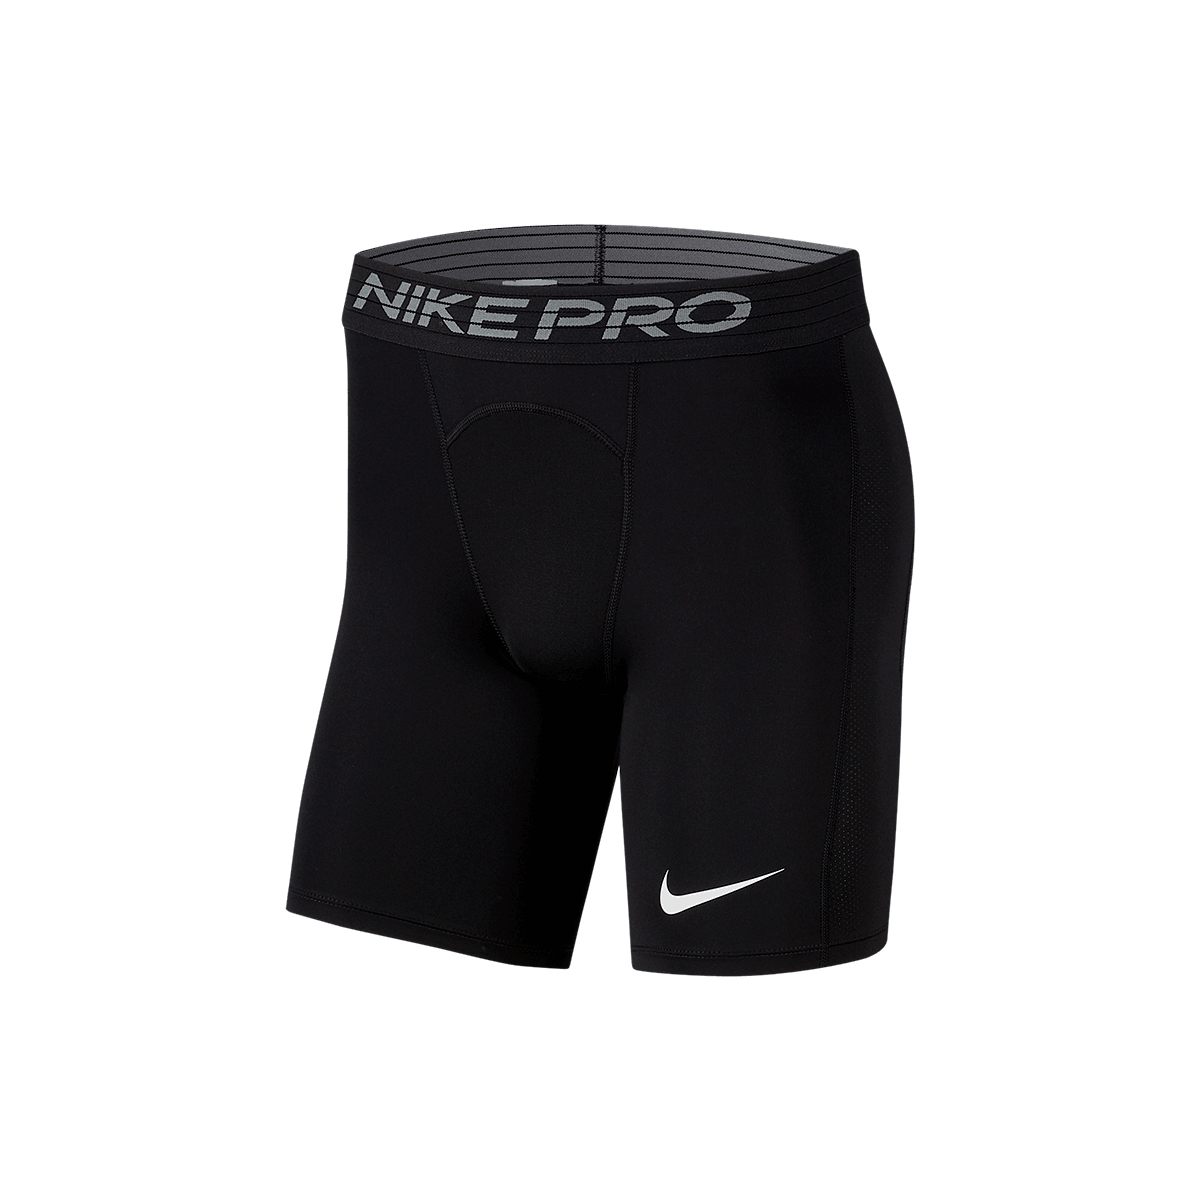 Nike Pro Compression Short Hose Dry Fit BV5588 010